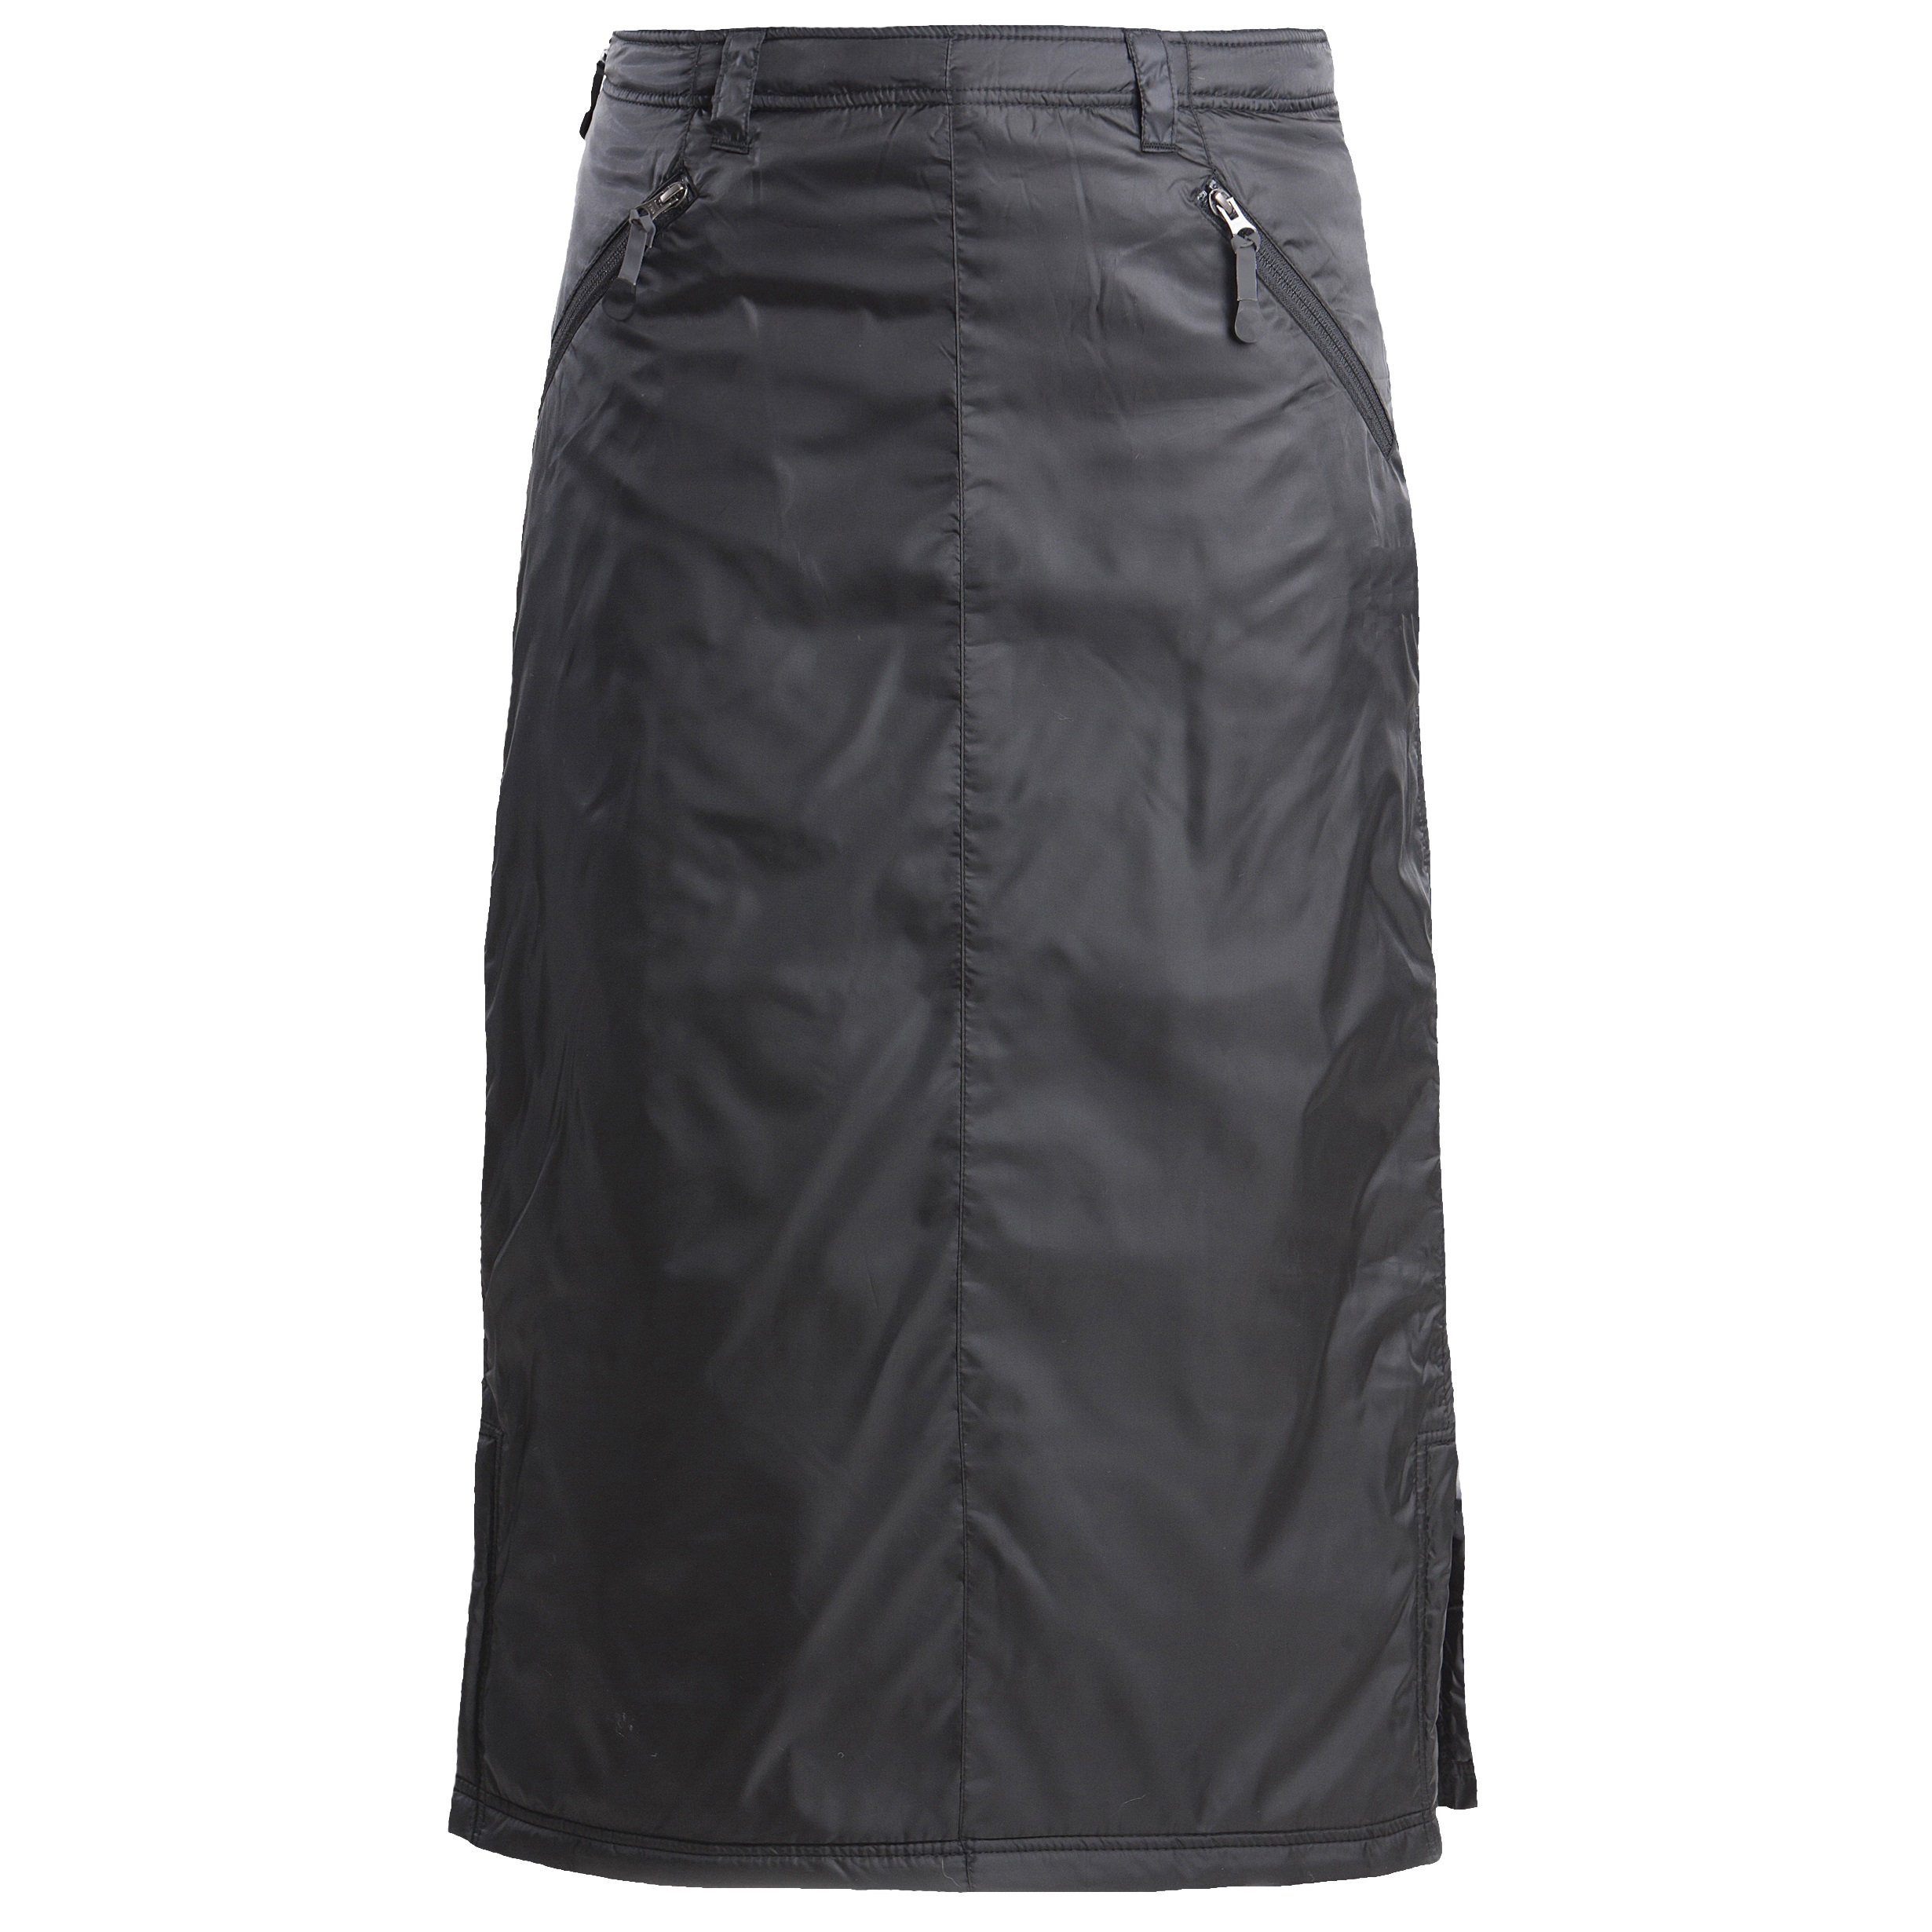 SKHOOP Women’s Original Skirt  Black